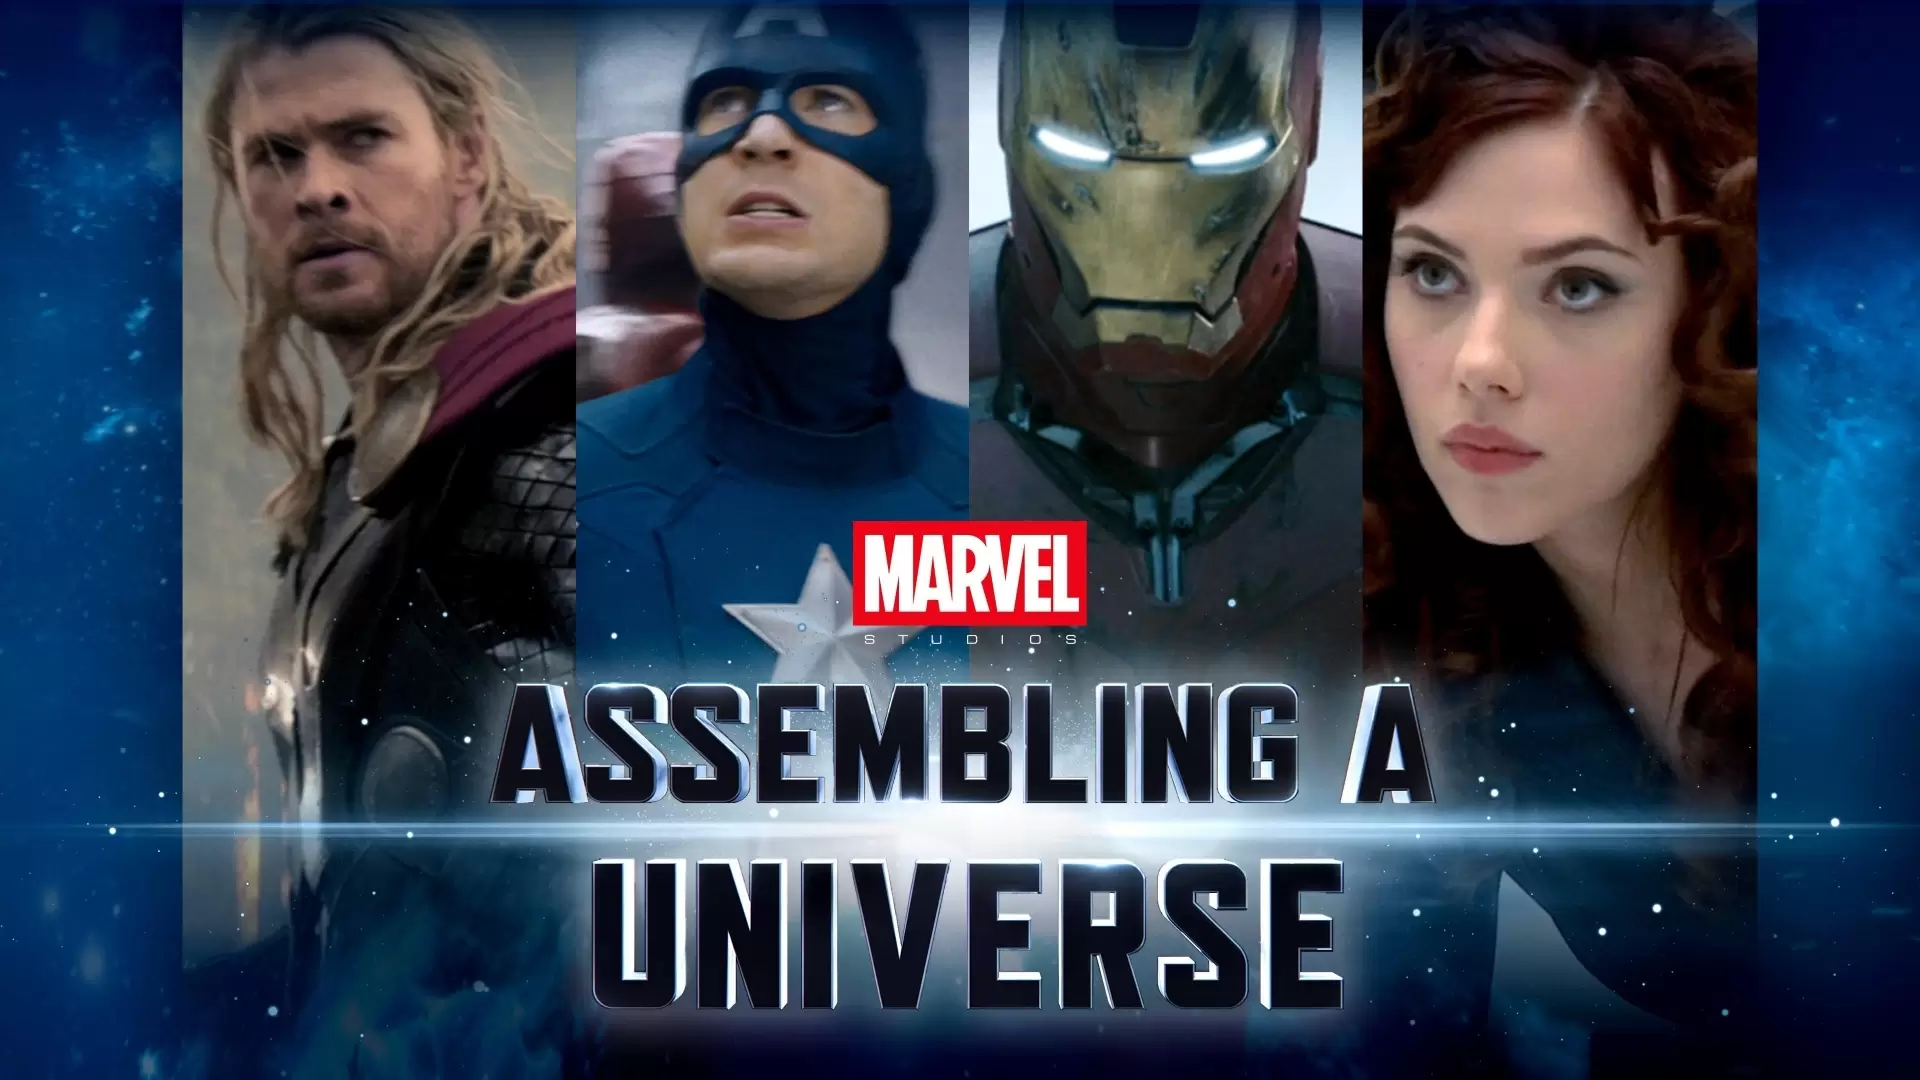 دانلود مستند Marvel Studios: Assembling a Universe 2014 (استودیوی مارول: مونتاژ یک جهان)